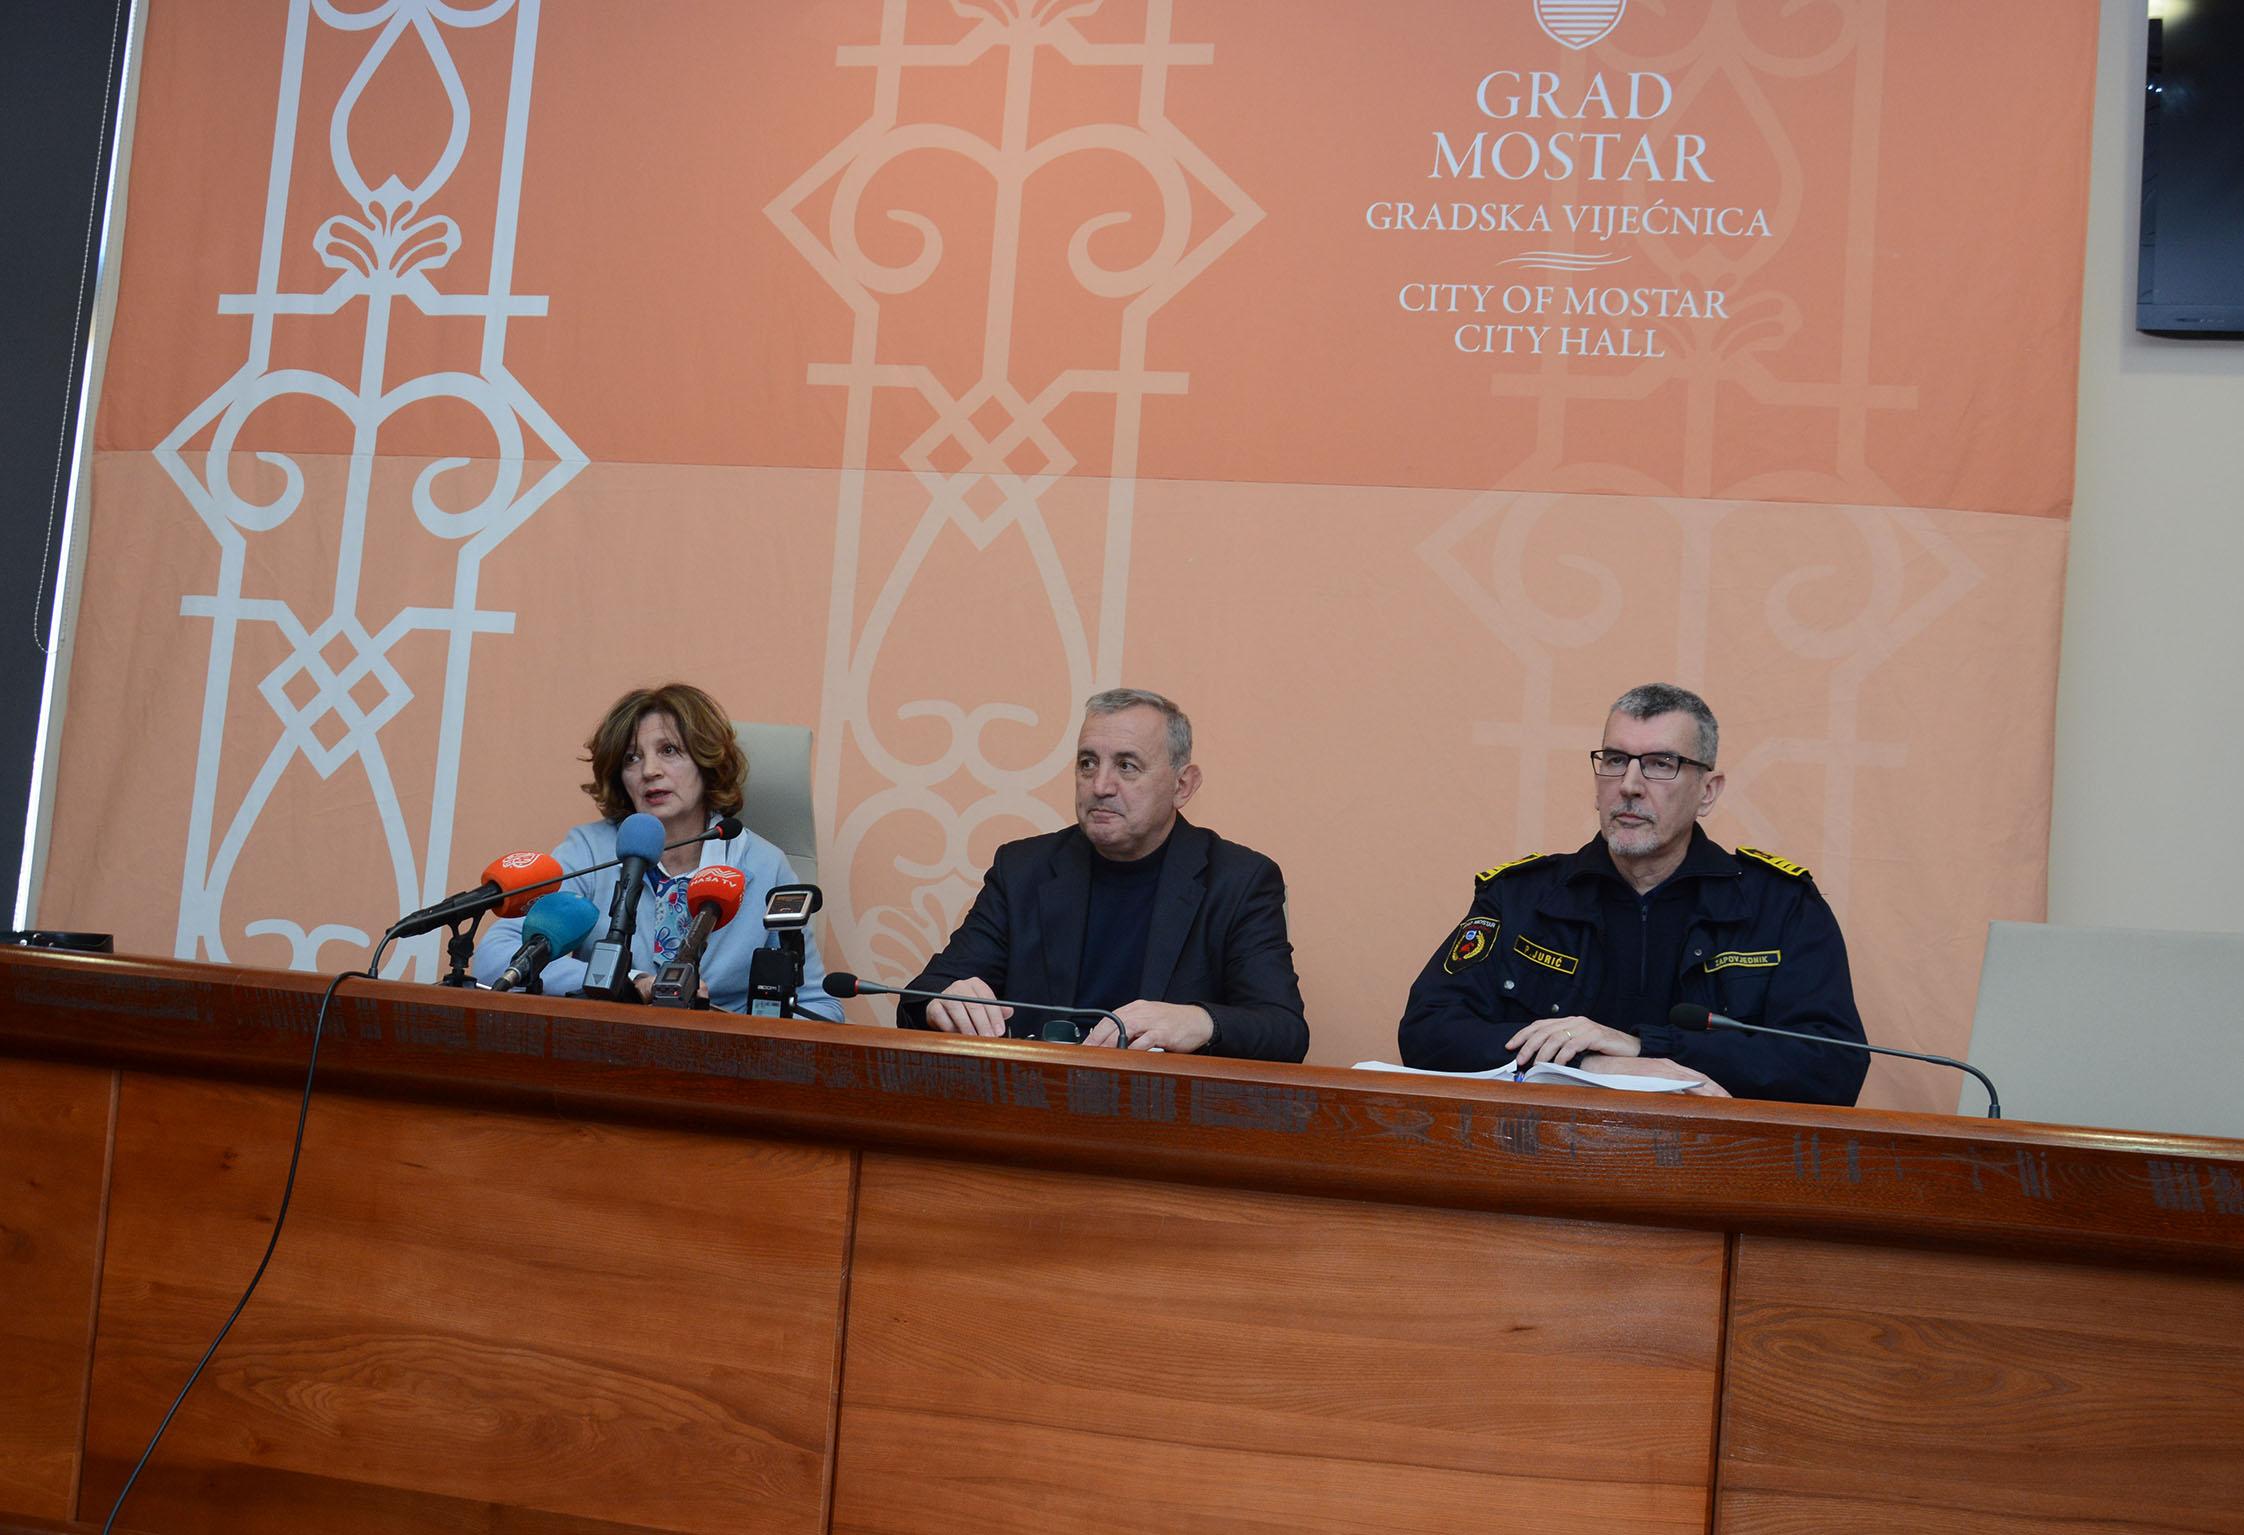 Pres-konferencija Civilne zaštite u Mostaru na ivici skandala